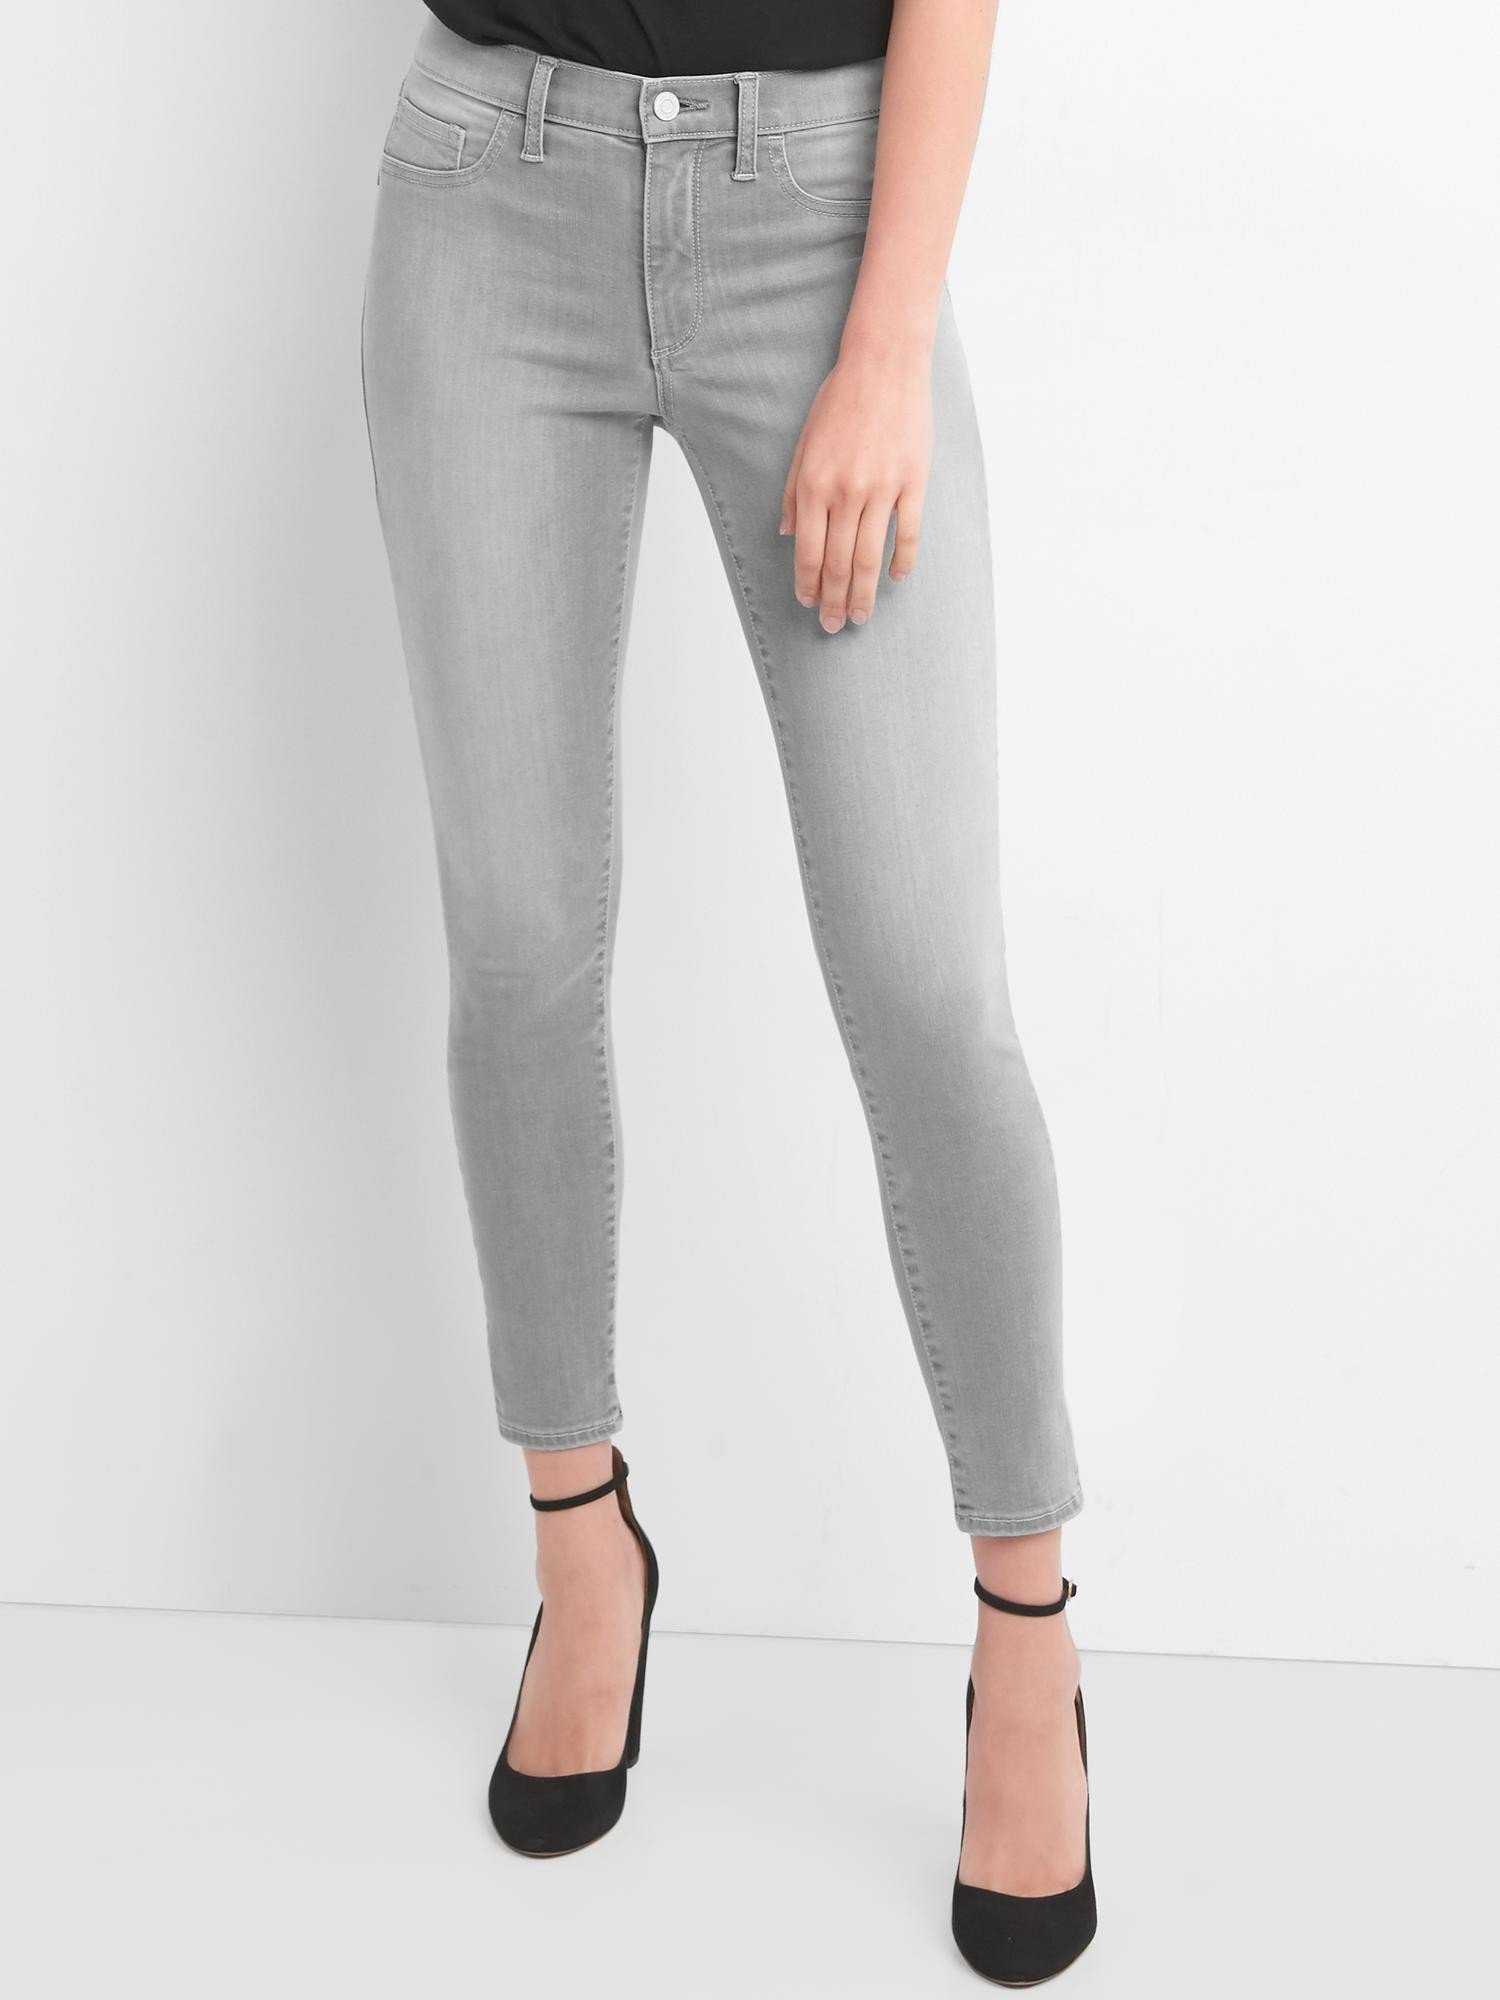 Legging jean pantolon product image